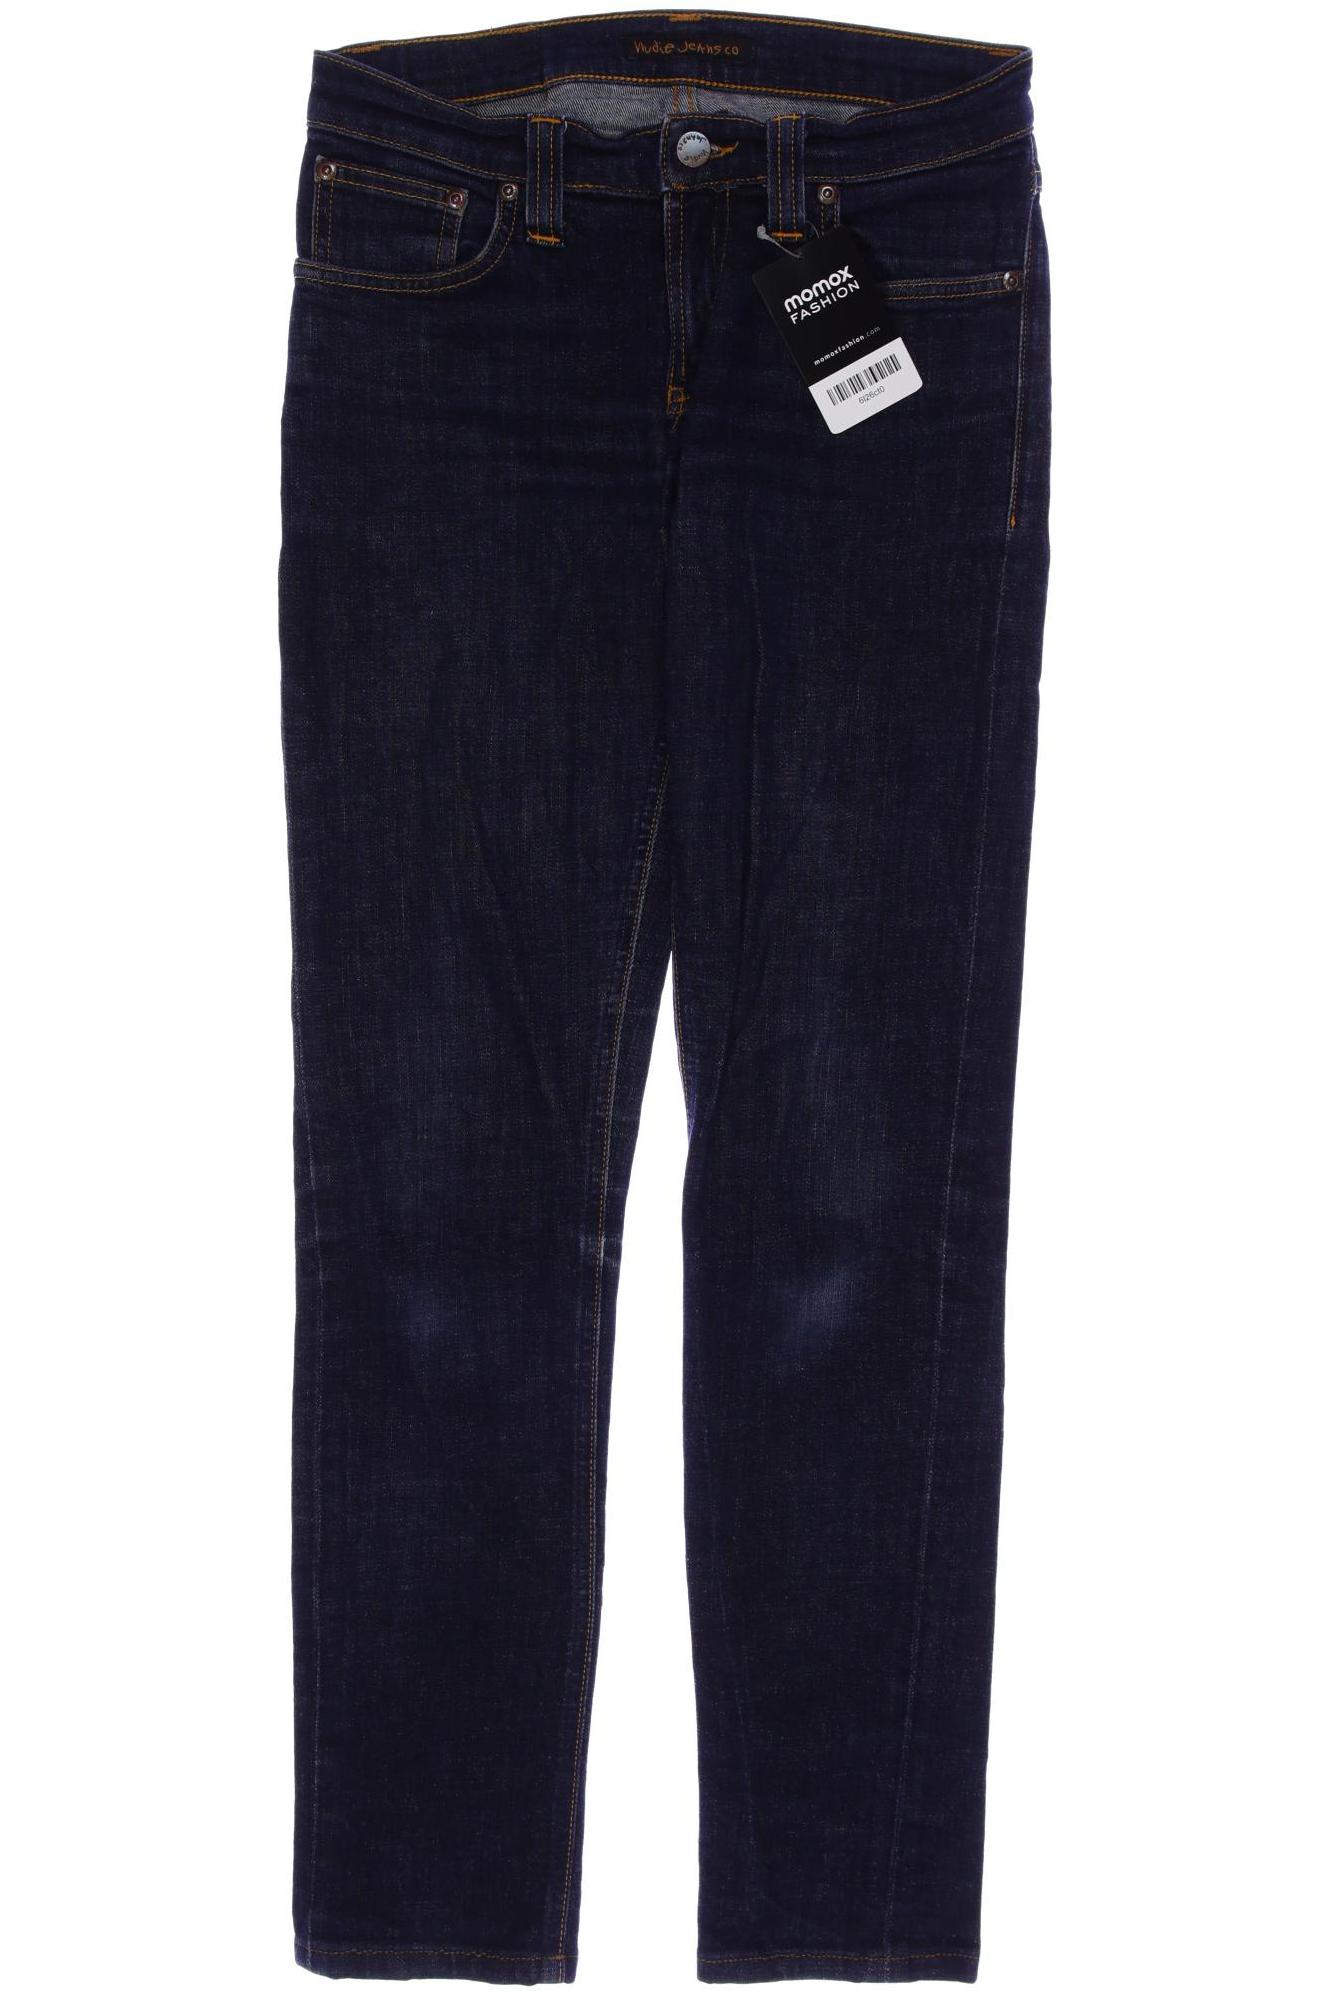 Nudie Jeans Damen Jeans, marineblau von Nudie Jeans